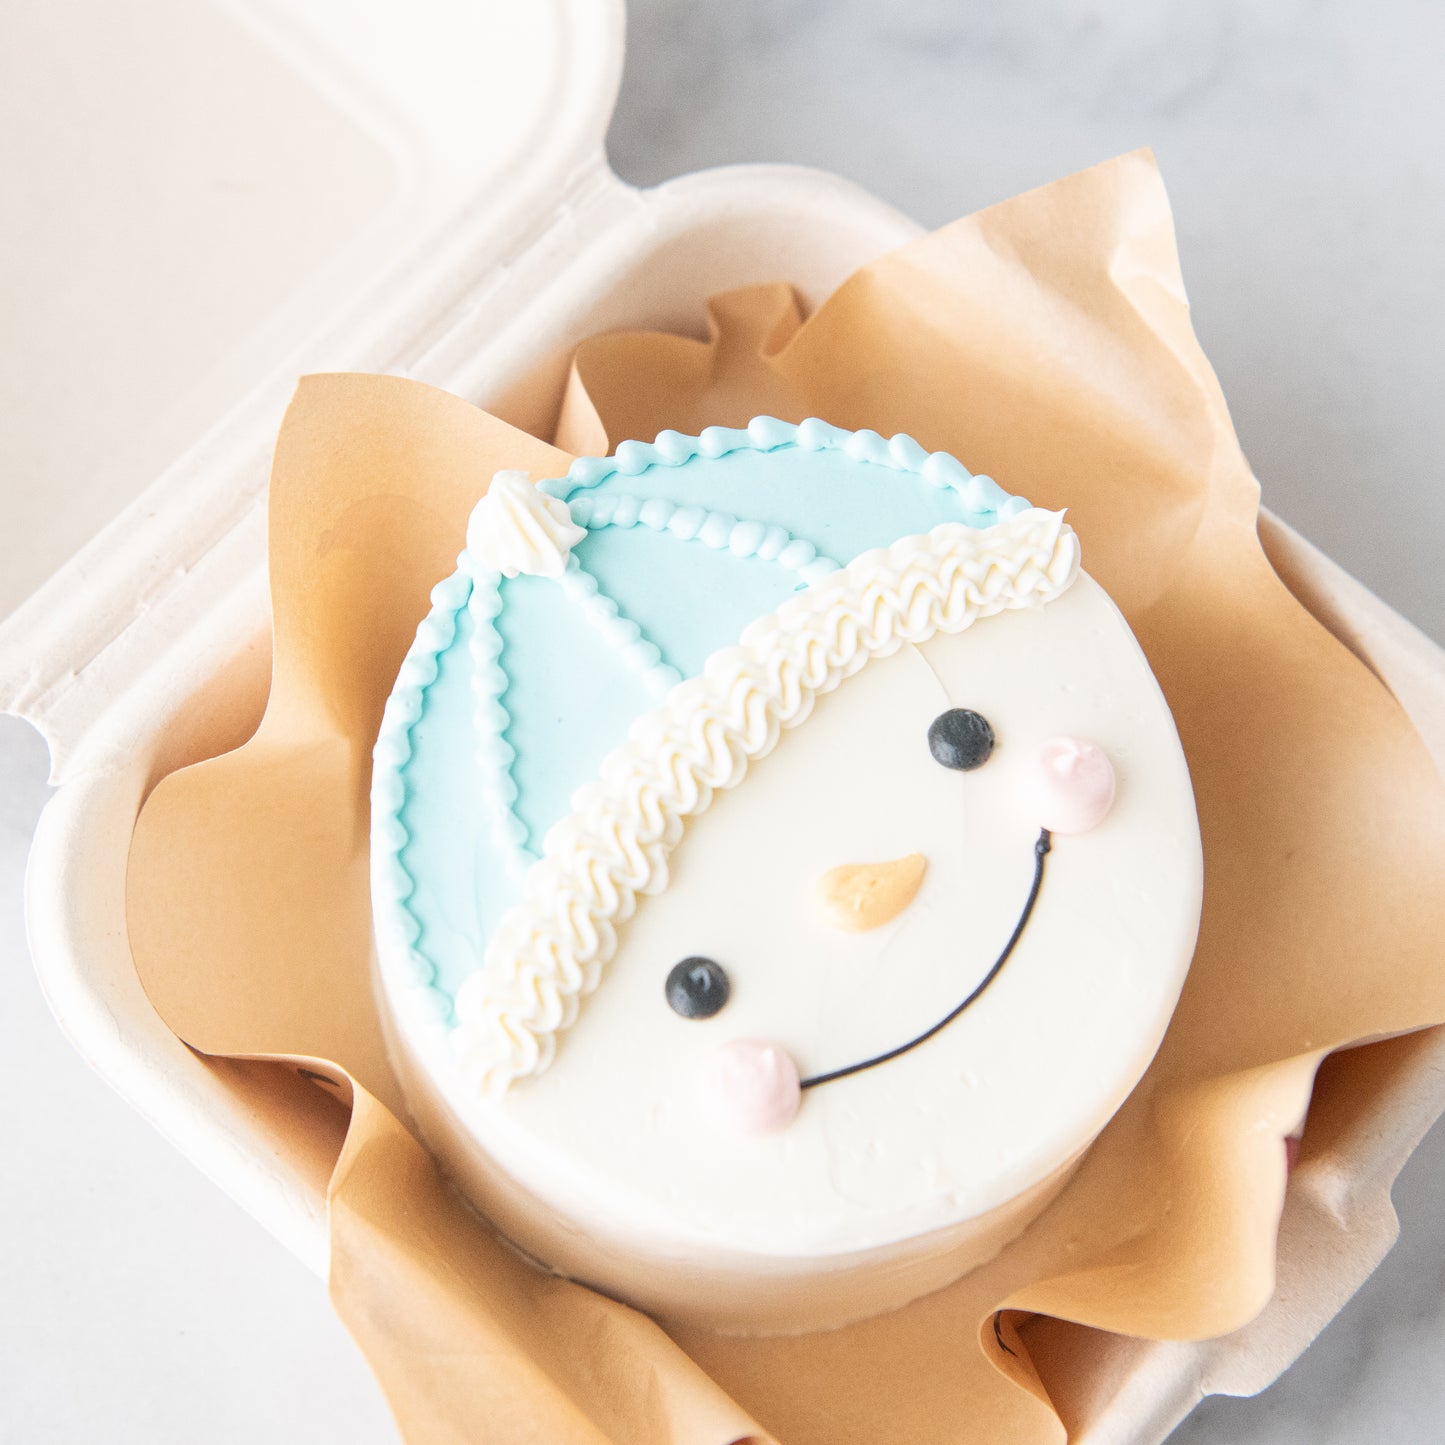 Ho ho ho! | Merry Christmas | Snowy Magic Bento cake | $28.90 Nett only